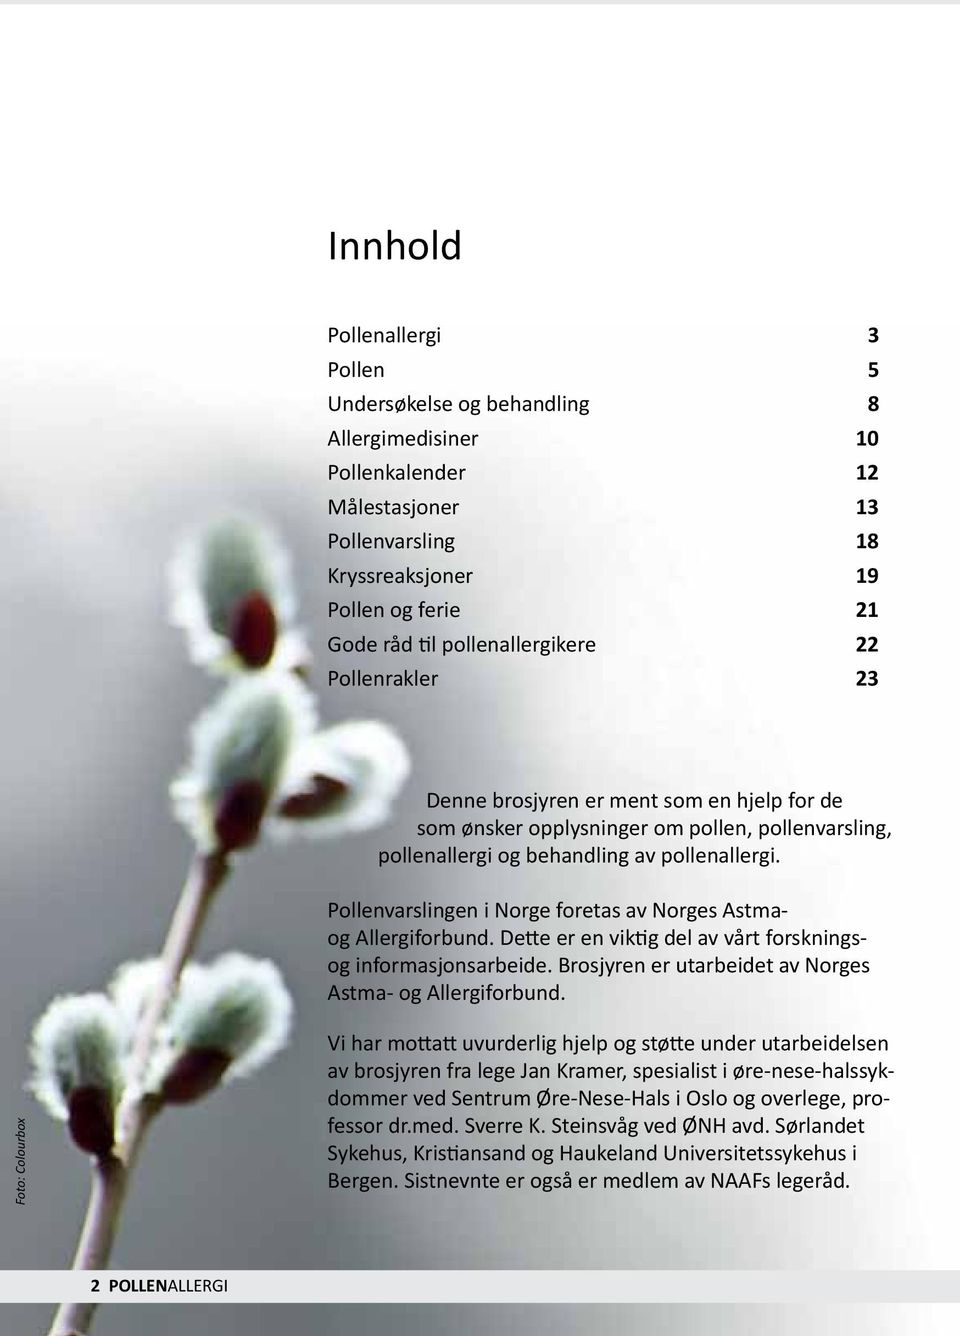 Pollenvarslingen i Norge foretas av Norges Astmaog Allergiforbund. Dette er en viktig del av vårt forskningsog informasjonsarbeide. Brosjyren er utarbeidet av Norges Astma- og Allergiforbund.